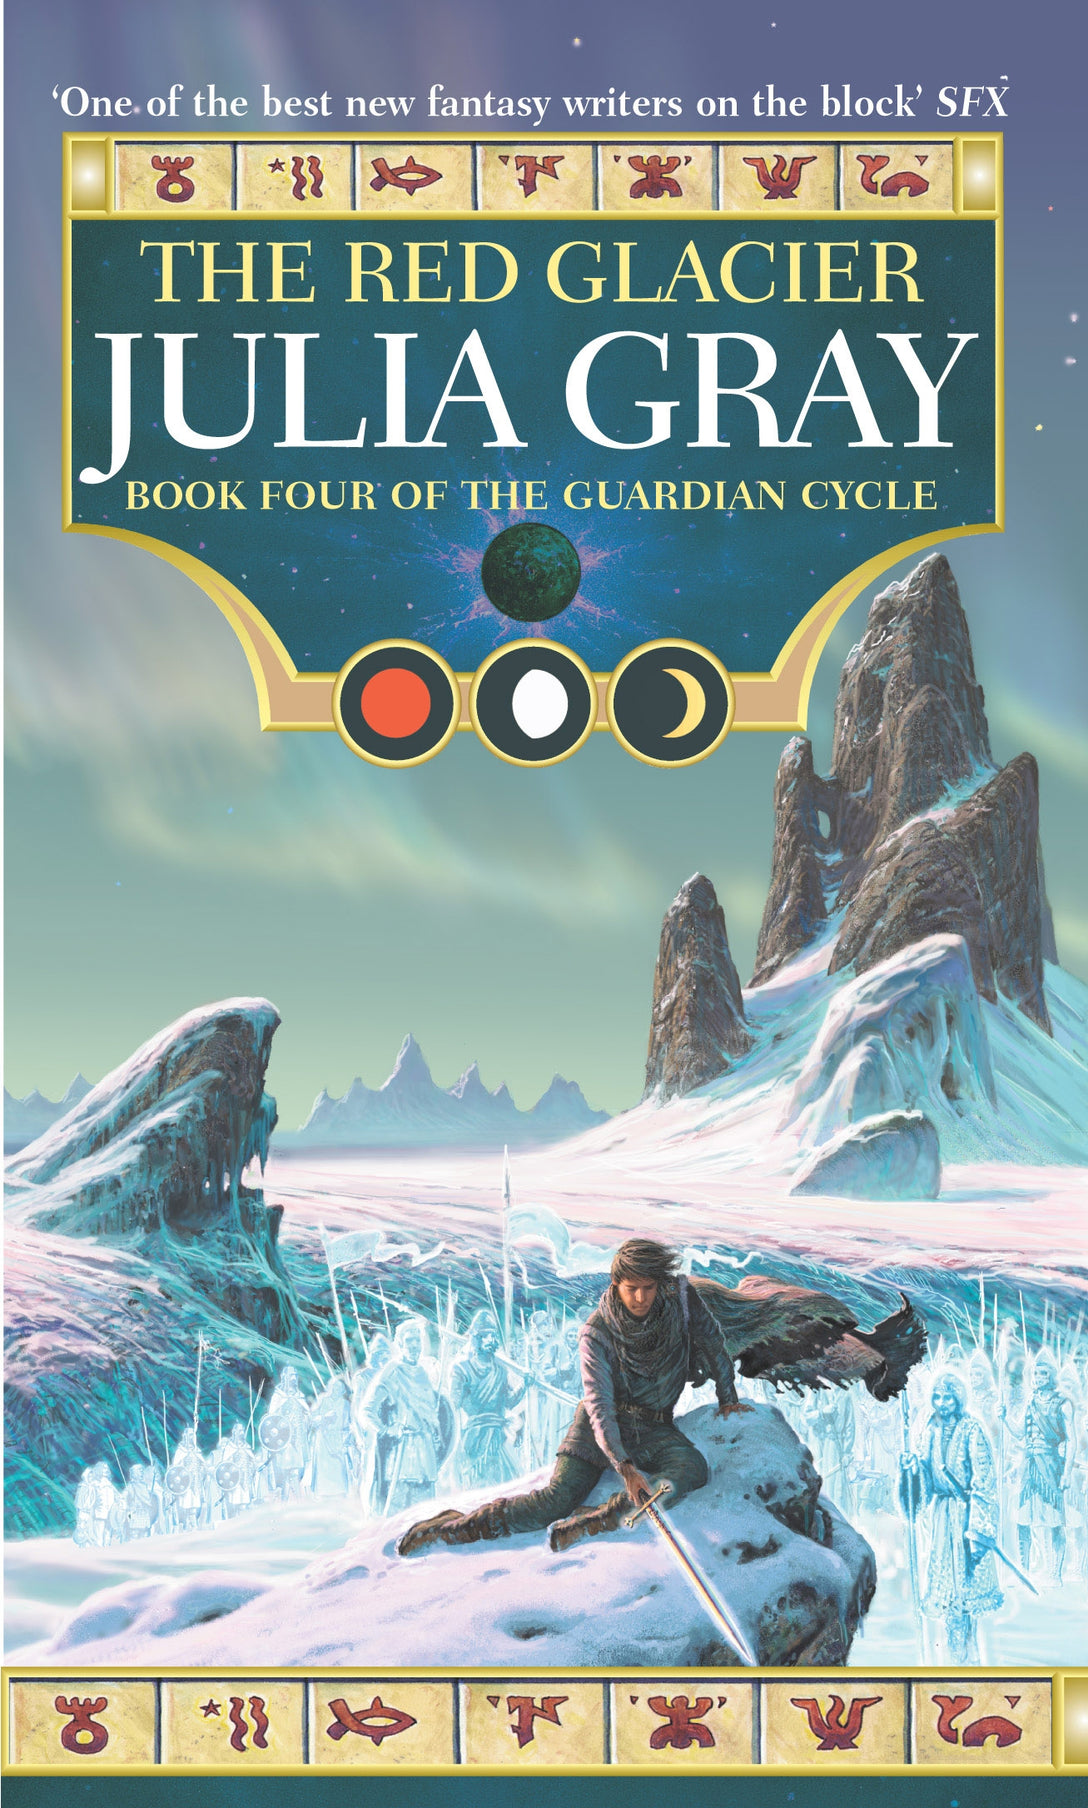 The Red Glacier by Julia Gray